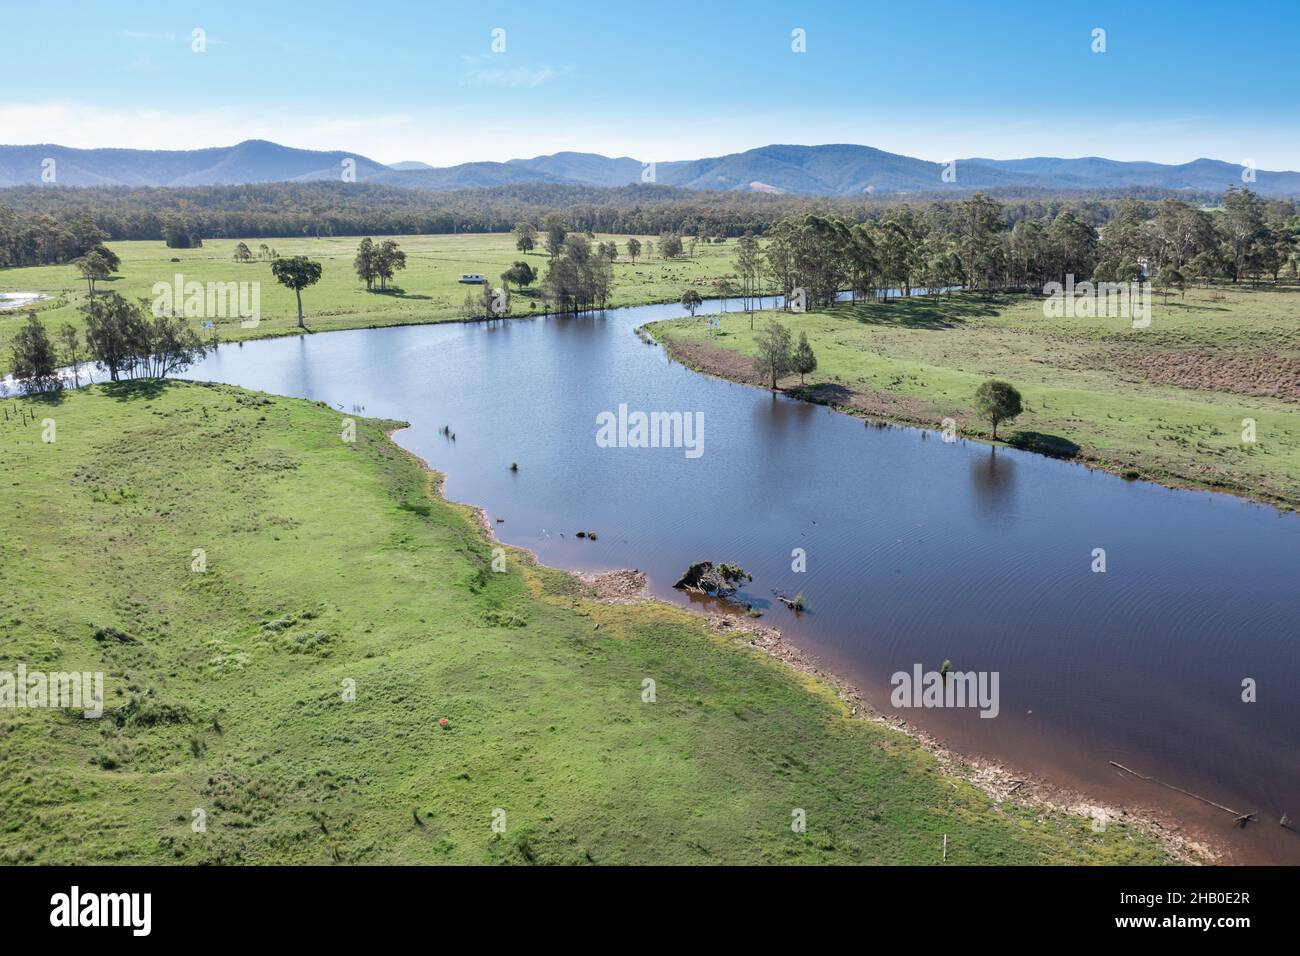 Vue aérienne du fleuve Myall et des terres agricoles de Bulahdelah - Nouvelle-Galles du Sud Australie Banque D'Images